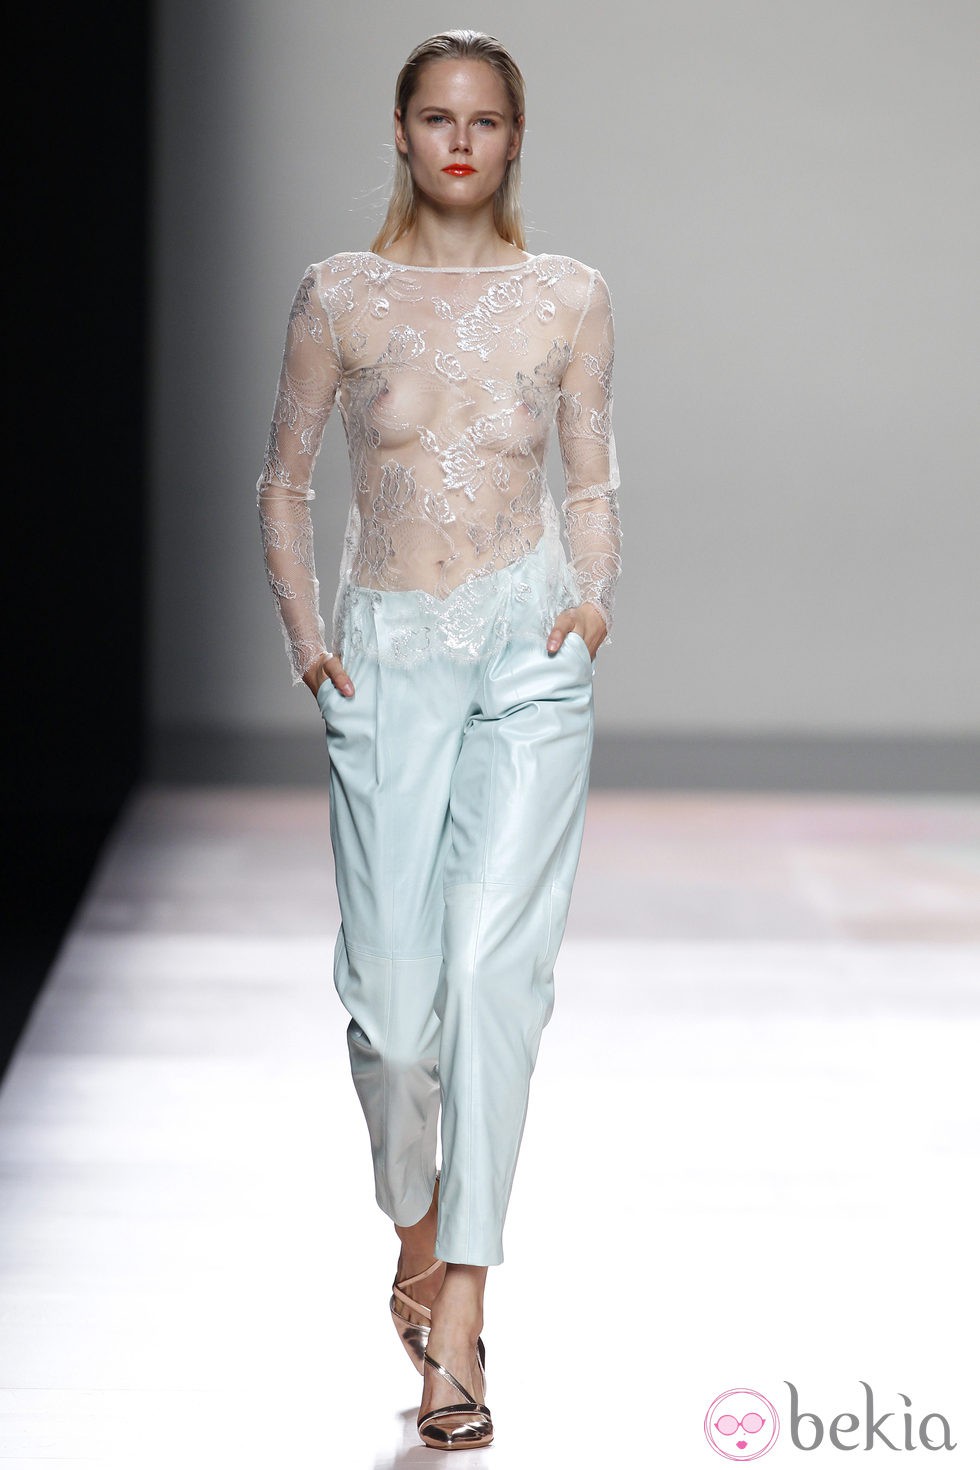 Pantalón y camisa de la colección primavera/verano 2014 de Duyos en Madrid Fashion Week